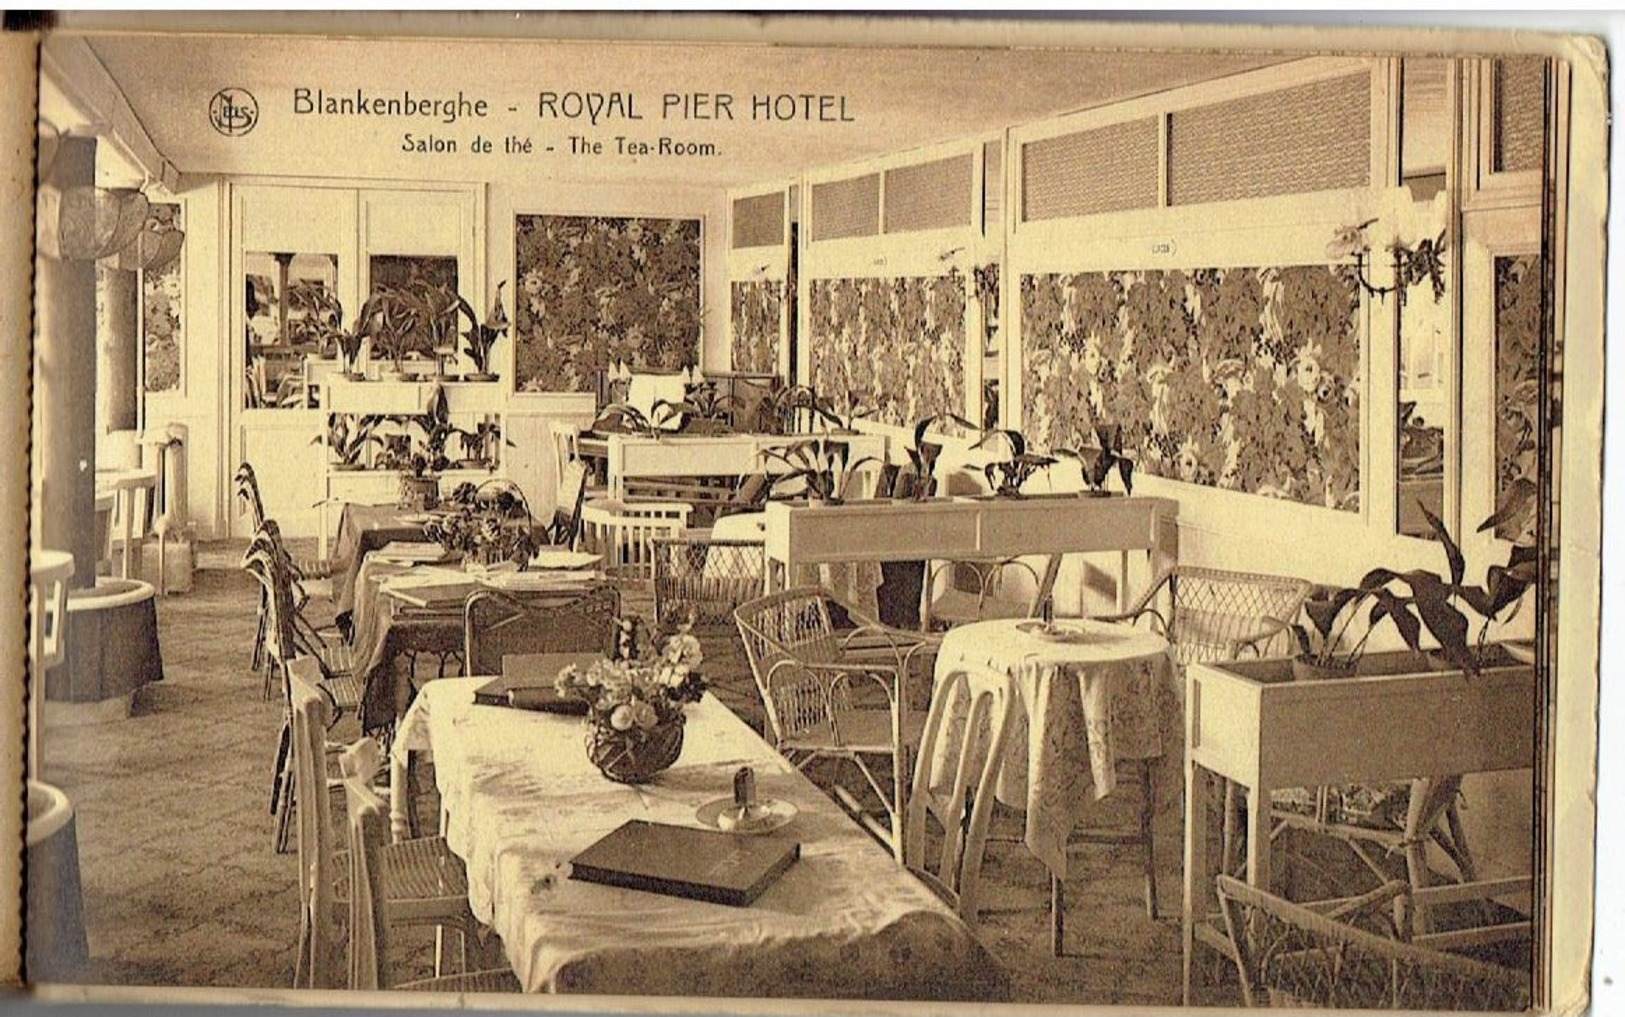 BLANKENBERGHE - Royal Pier Hotel - Boekje 10 kaarten kompleet - zie scans 12 st